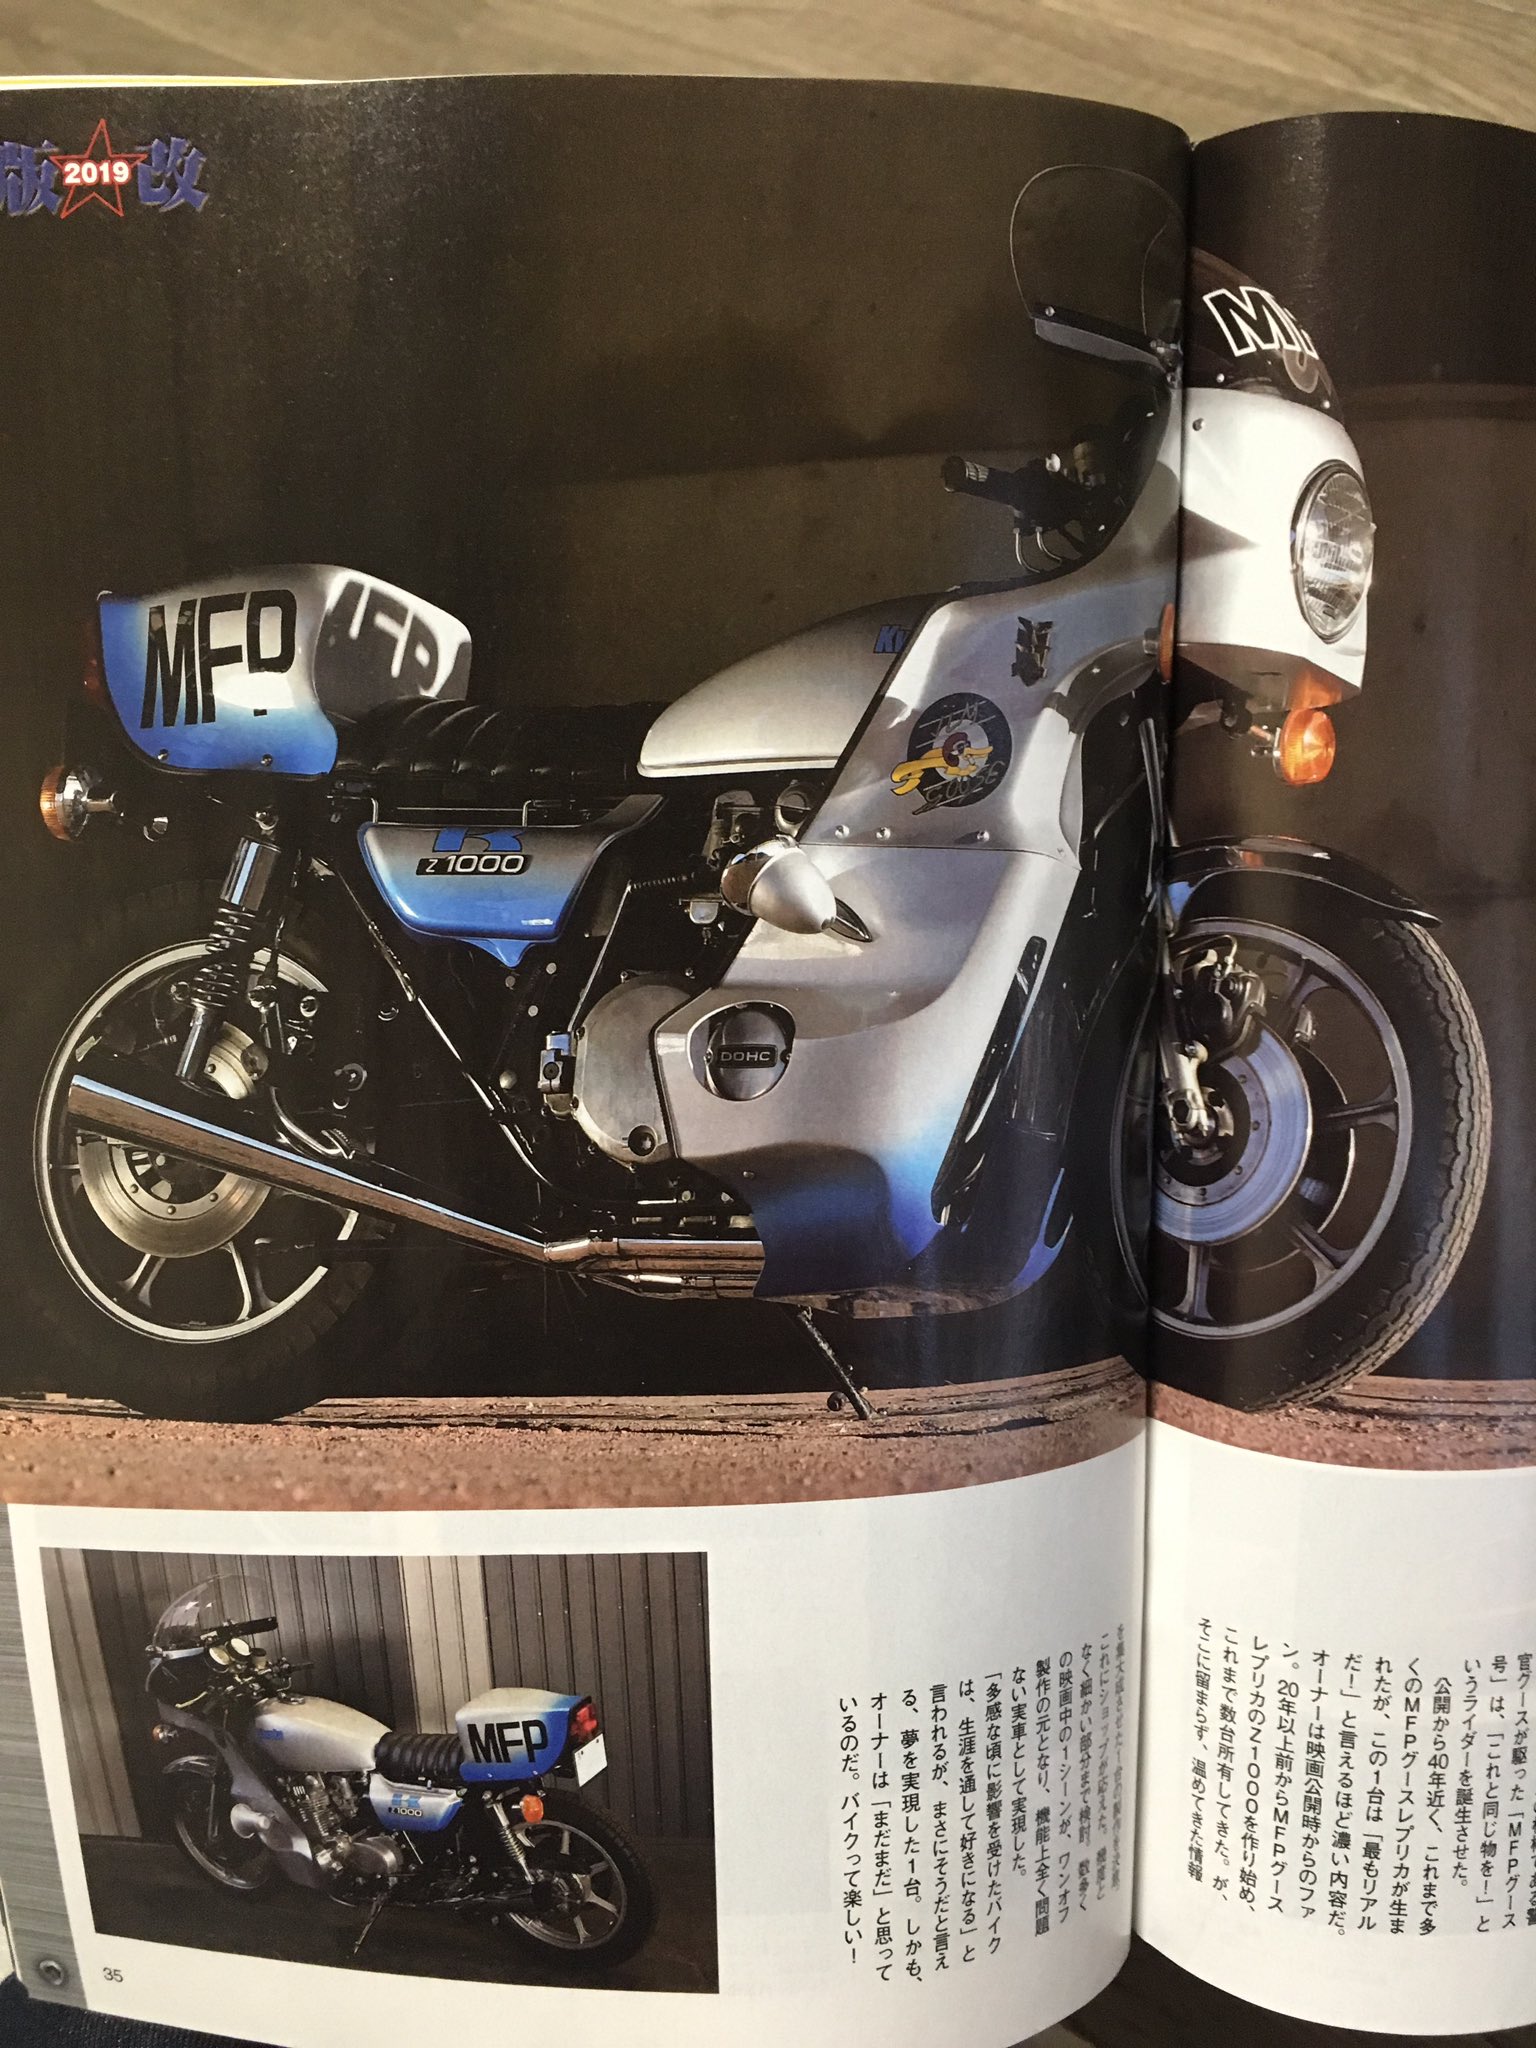 シタデルの工作室 ミスターバイクbgの今月号 見開き2ページでマッドマックスのmfpグースレプリカを紹介 Z1000ベースの見事な一台を細かく紹介